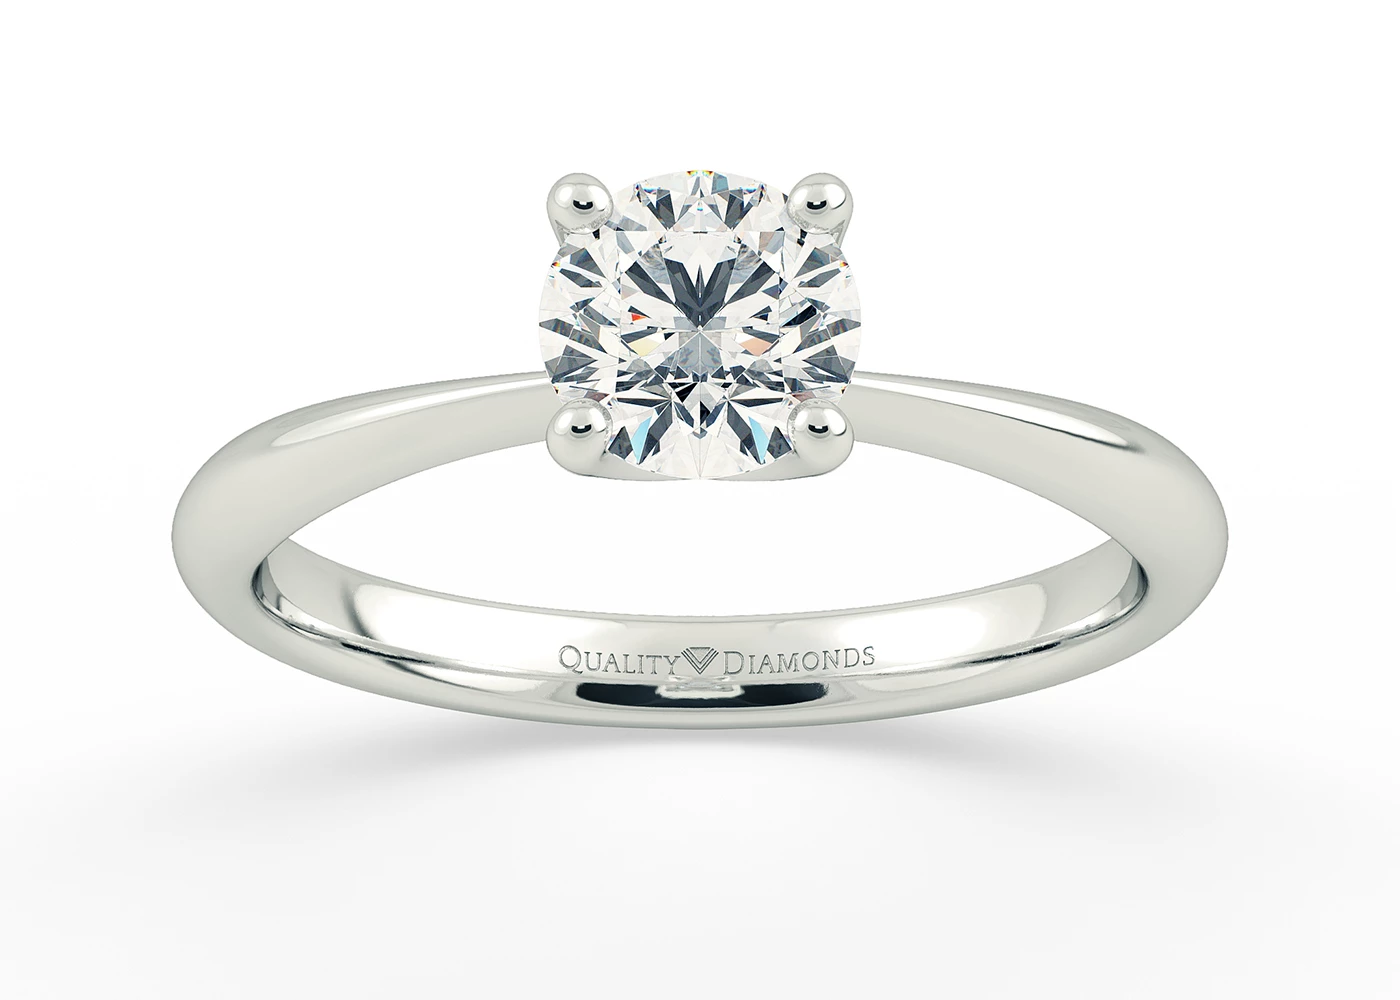 One Carat Round Brilliant Solitaire Diamond Engagement Ring in Platinum 950